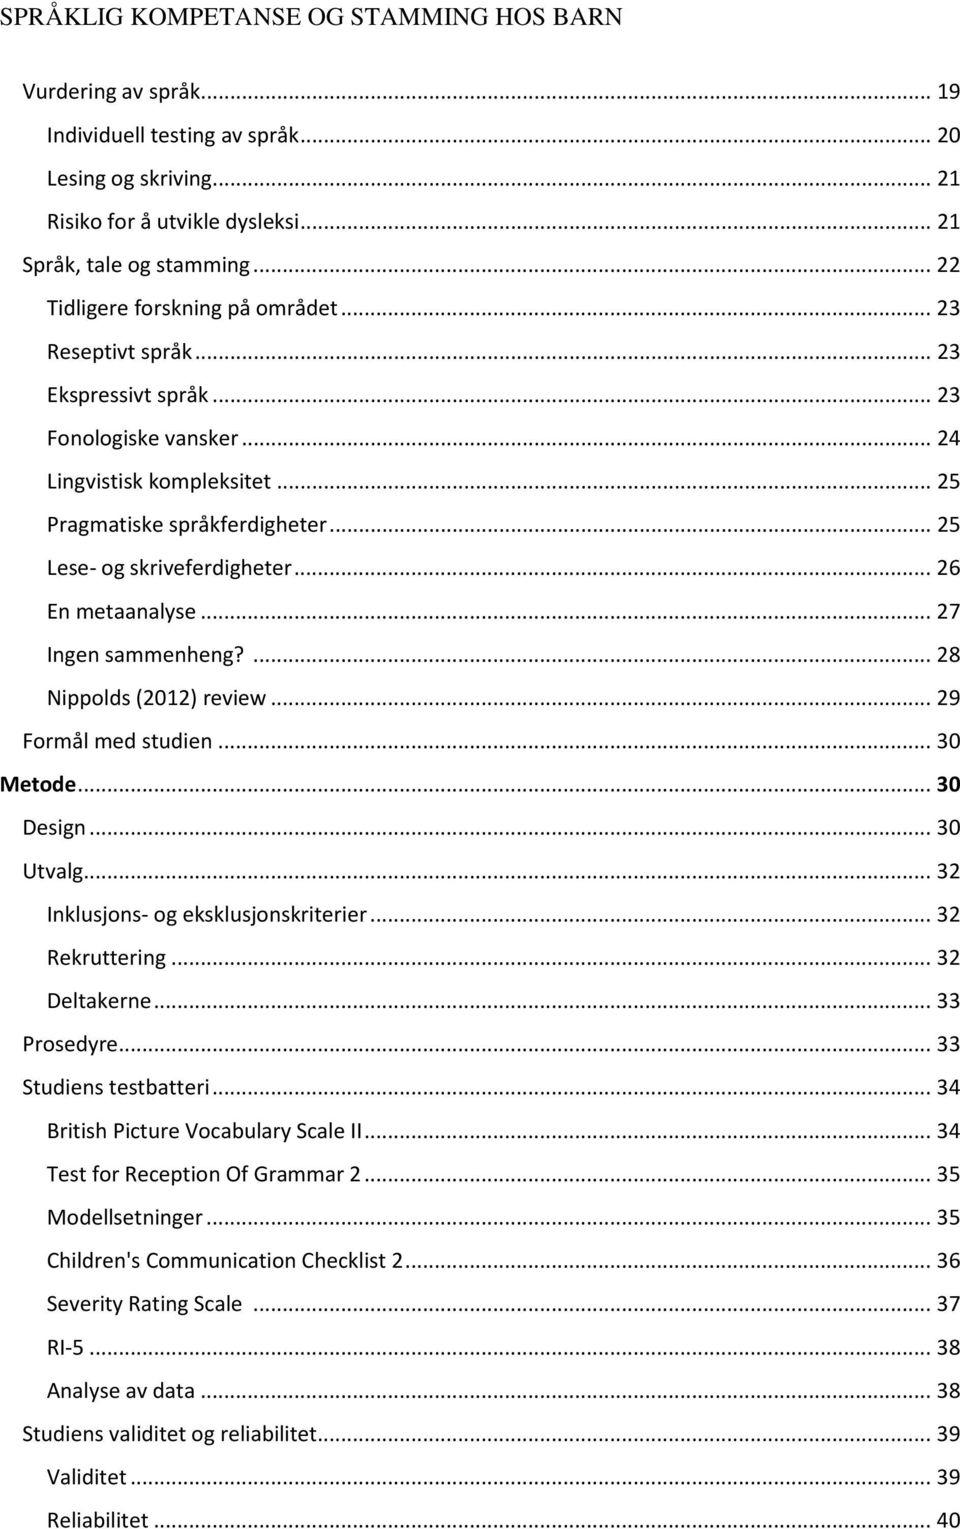 .. 25 Lese- og skriveferdigheter... 26 En metaanalyse... 27 Ingen sammenheng?... 28 Nippolds (2012) review... 29 Formål med studien... 30 Metode... 30 Design... 30 Utvalg.